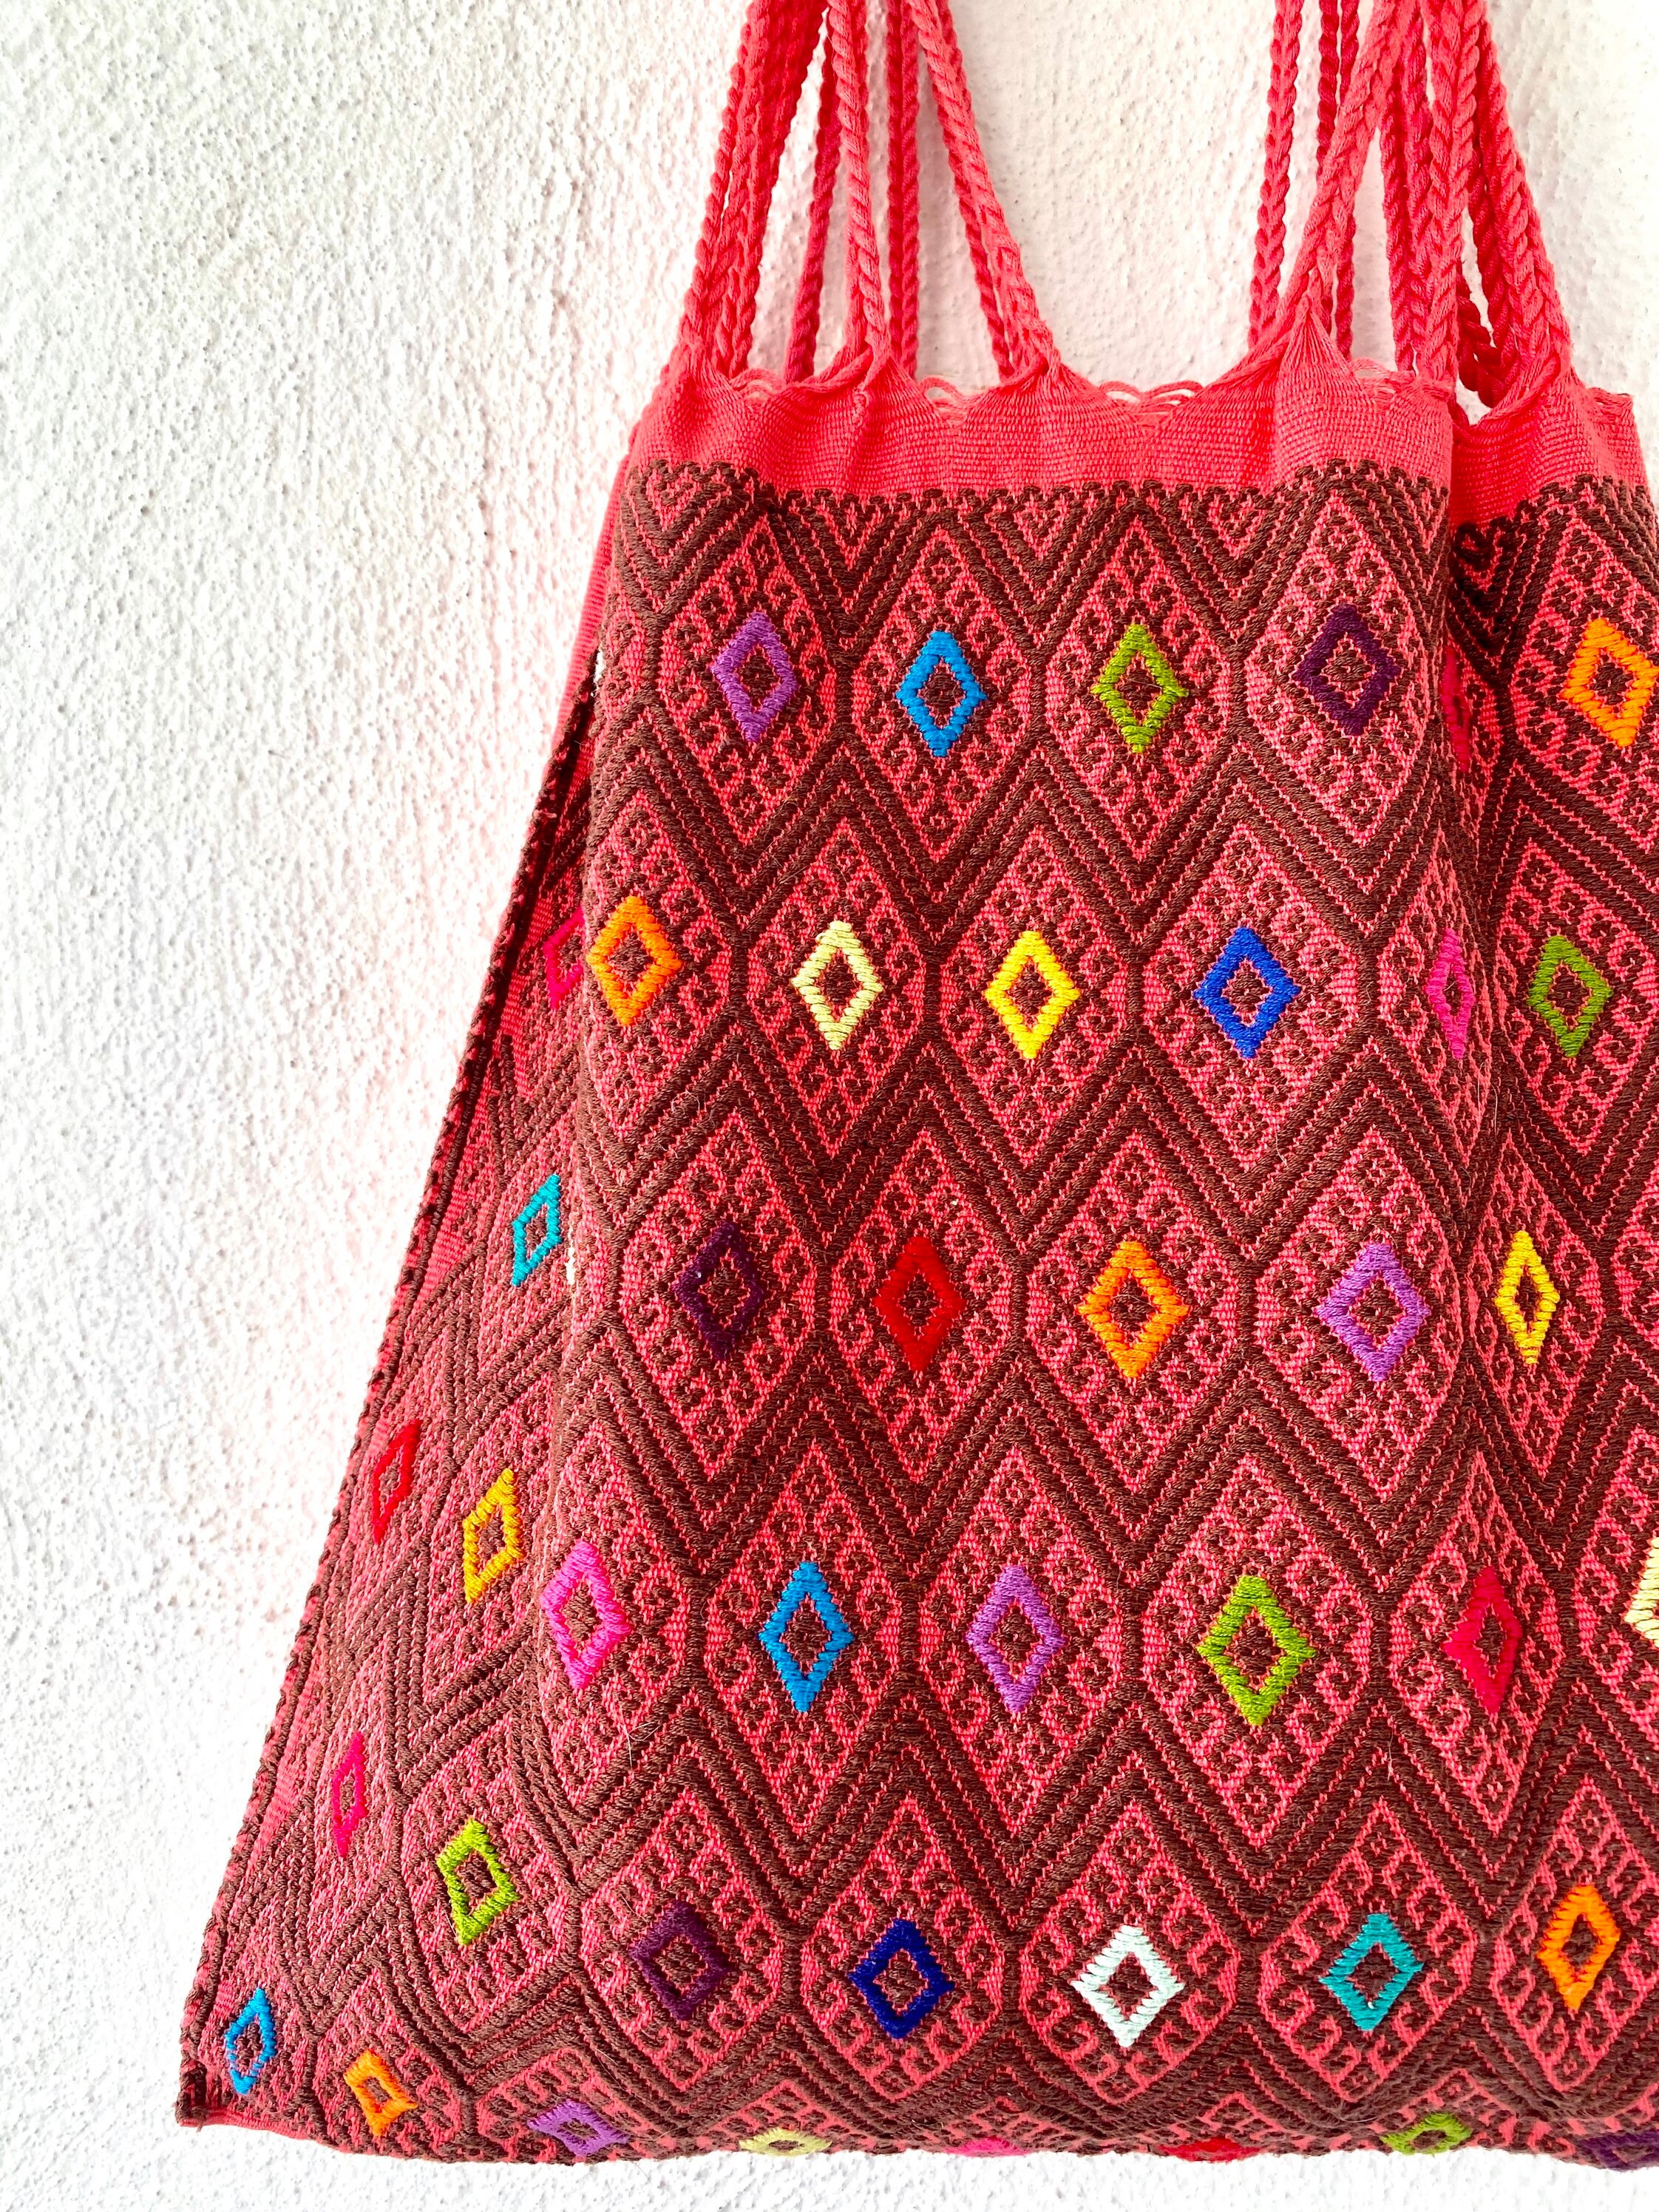 Vintage Boho Bag - Pink Bohemian Shoulder Bag Made With Vintage Fabrics